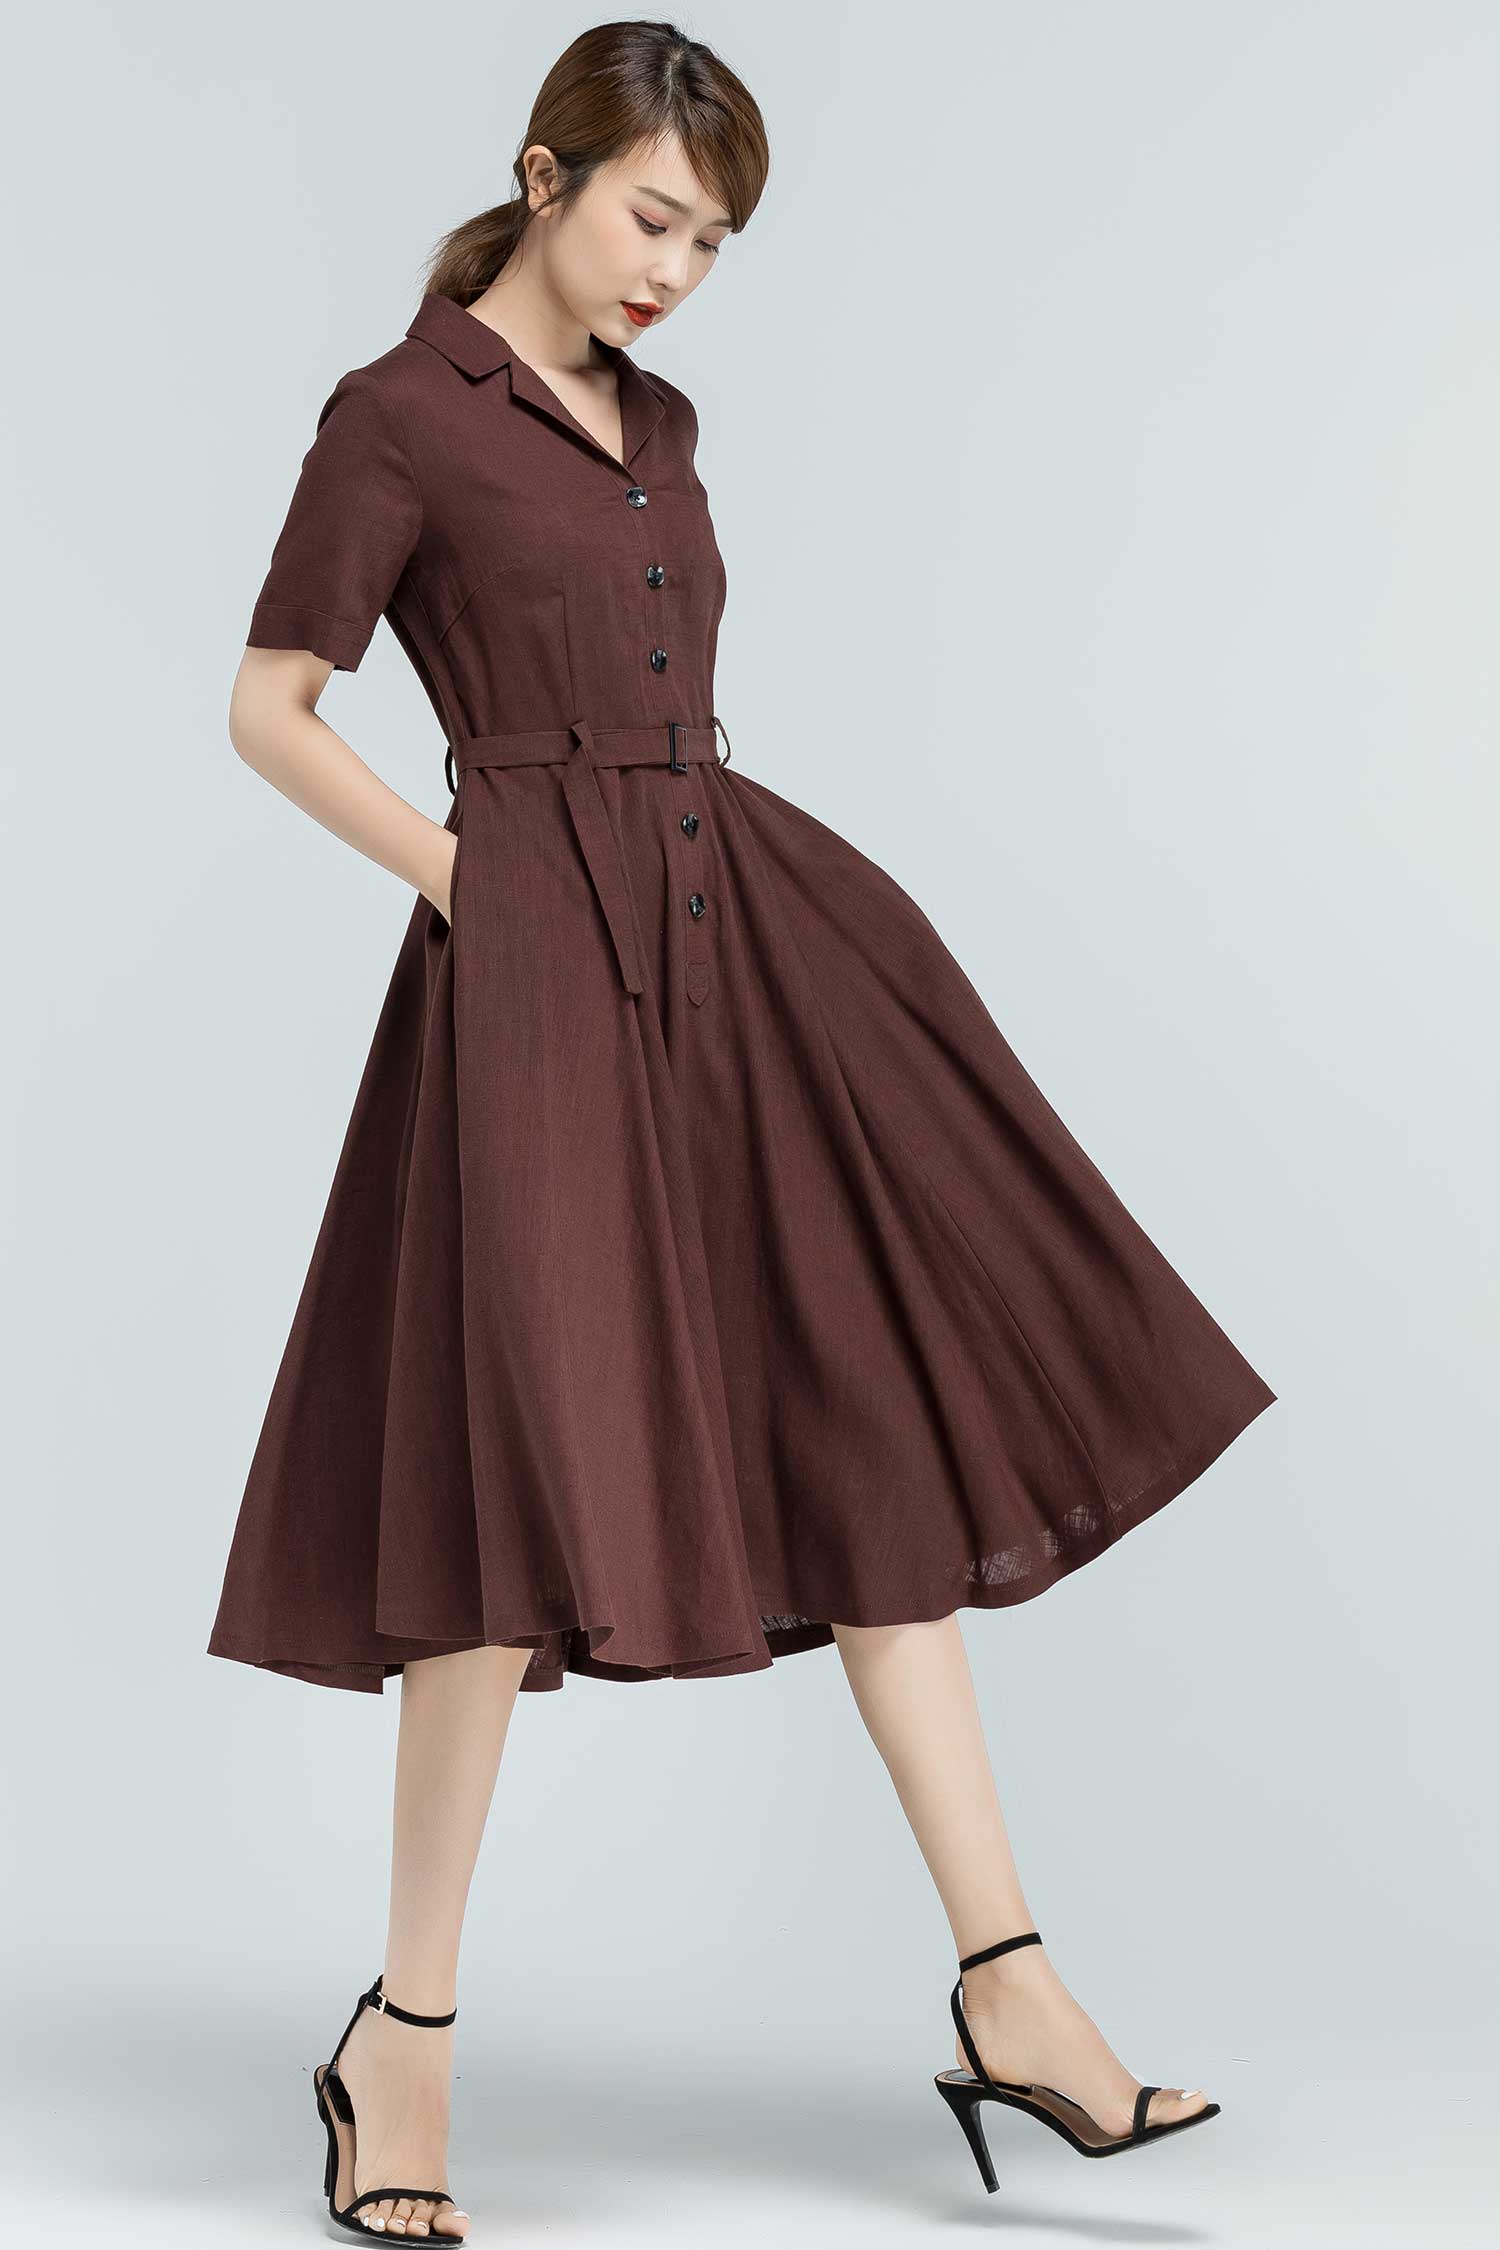 50s inspired swing shirt Dress in brown 2382# – XiaoLizi